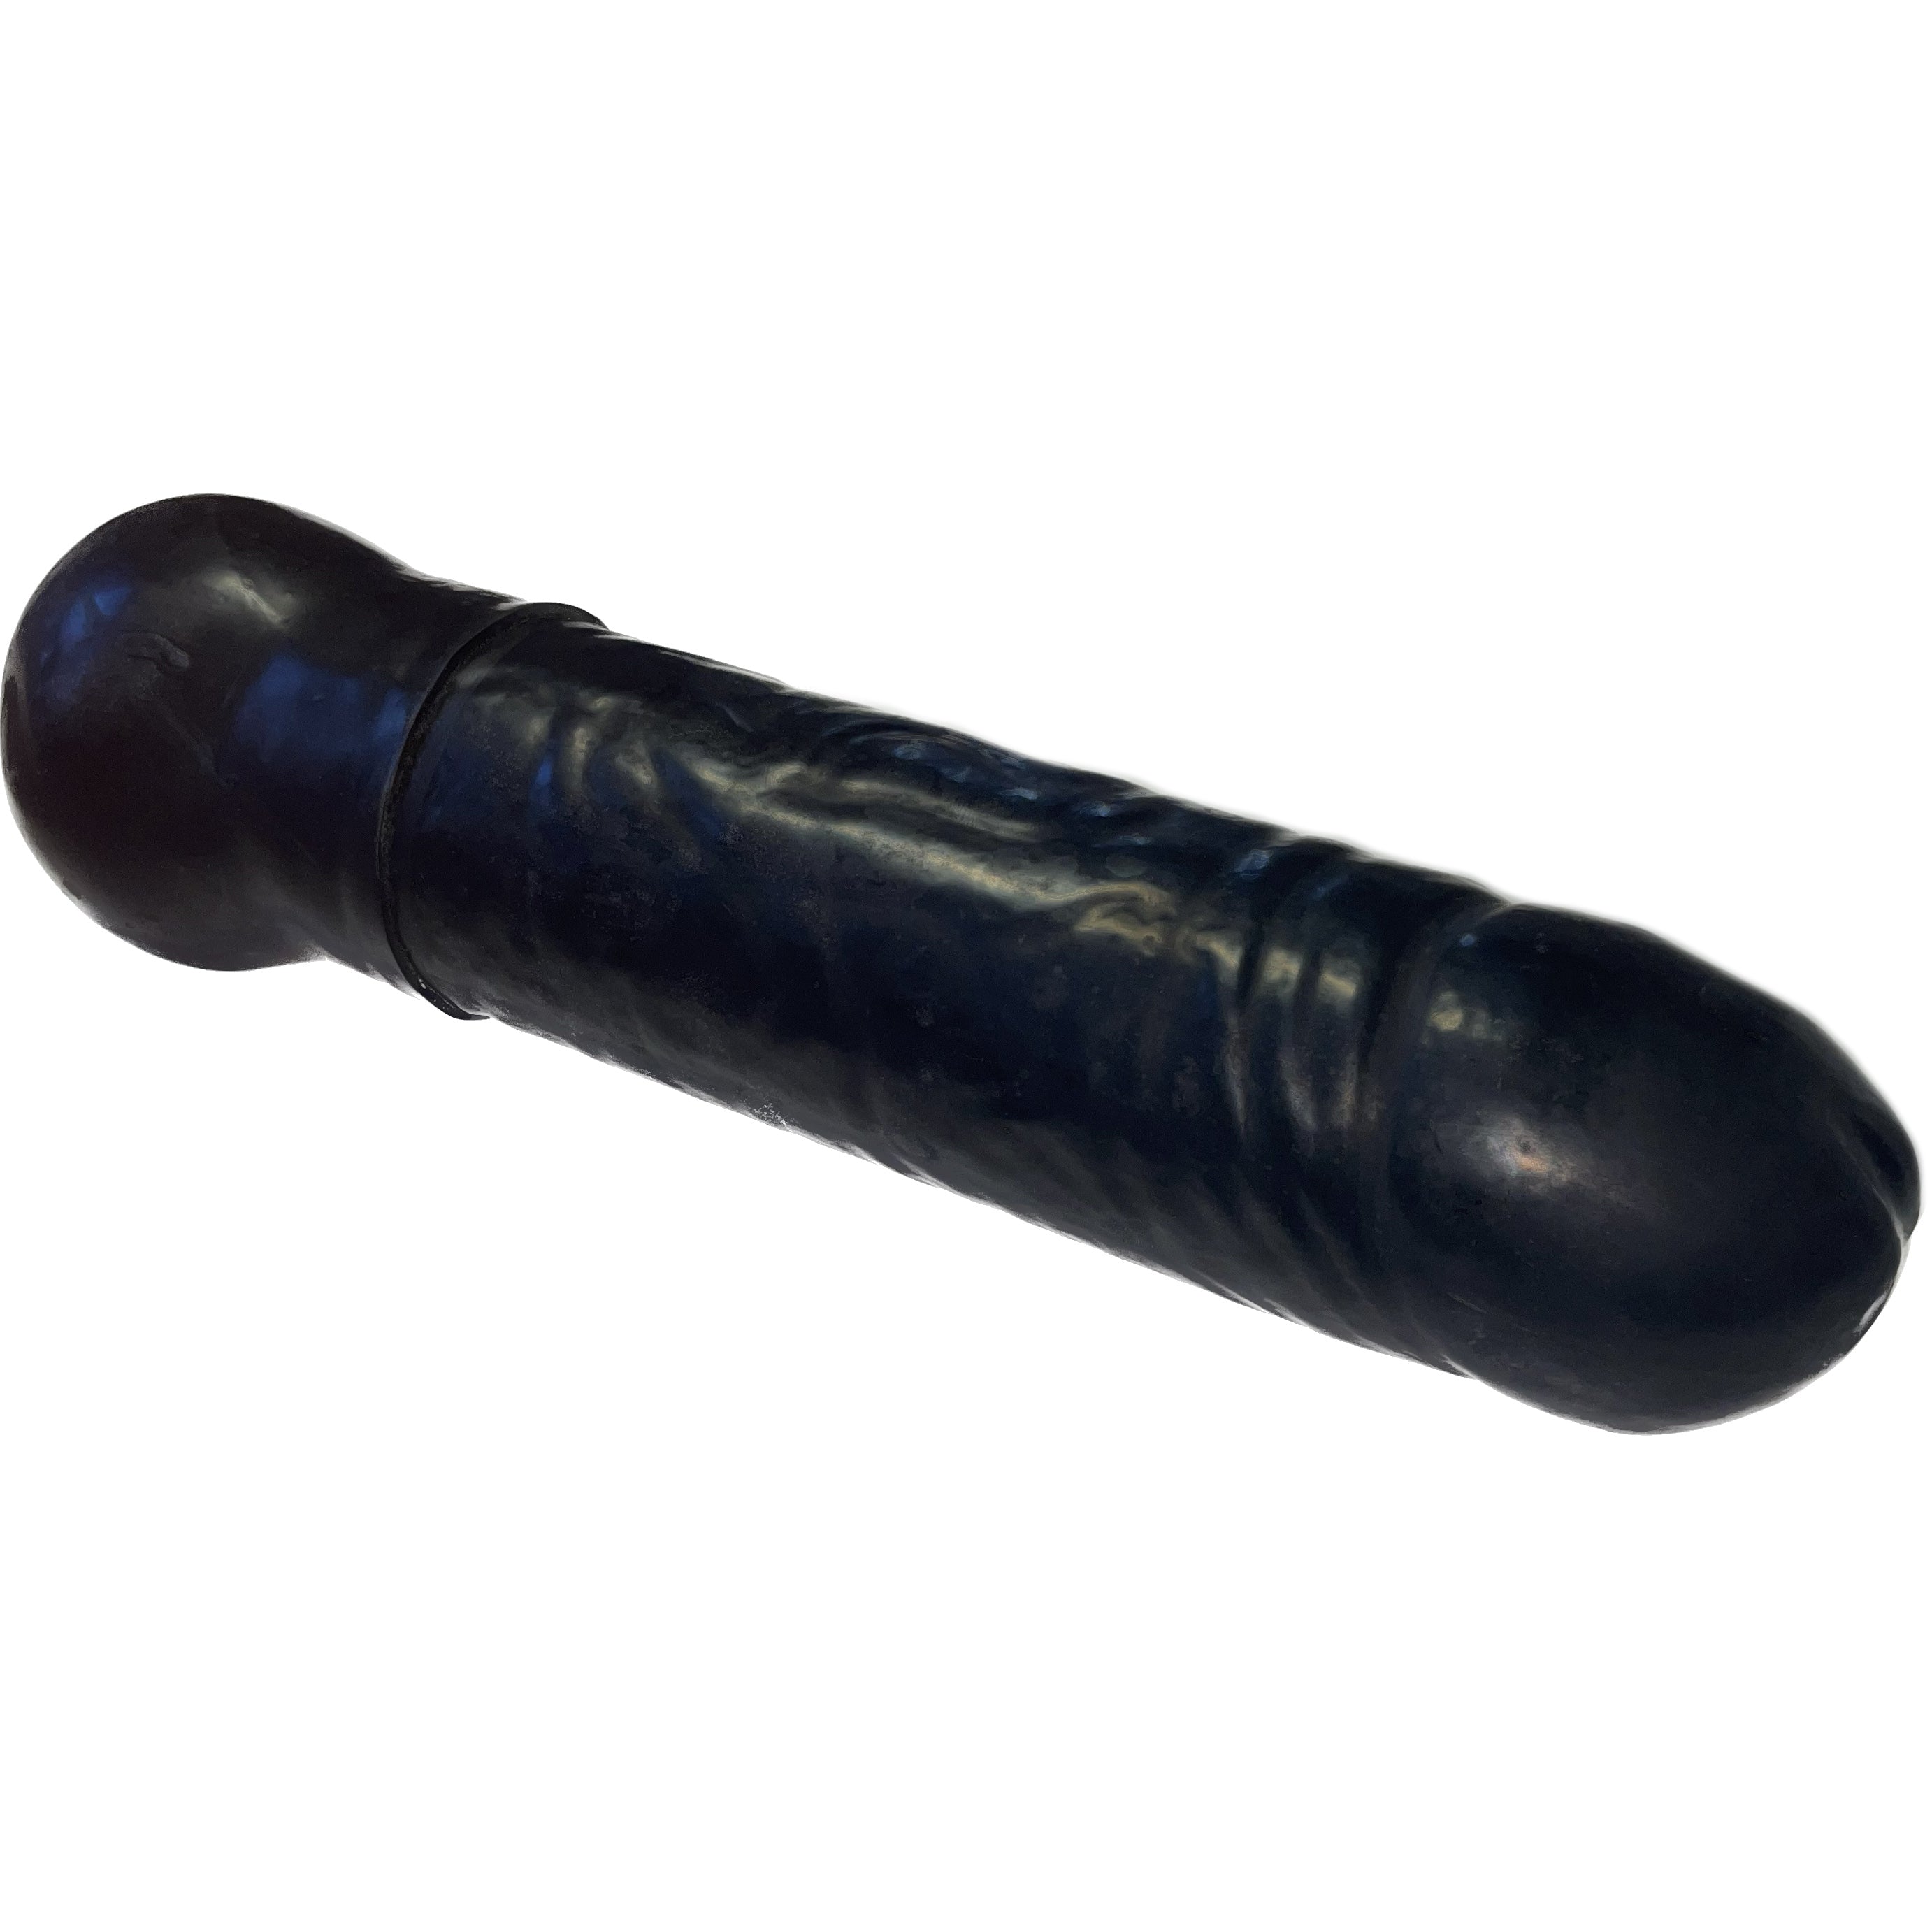 Rubberfashion Latex Anal Dildo - Plug extrem groß - realistischer Dildo XXXXL für Frauen und Männer 33 x 7,1cm